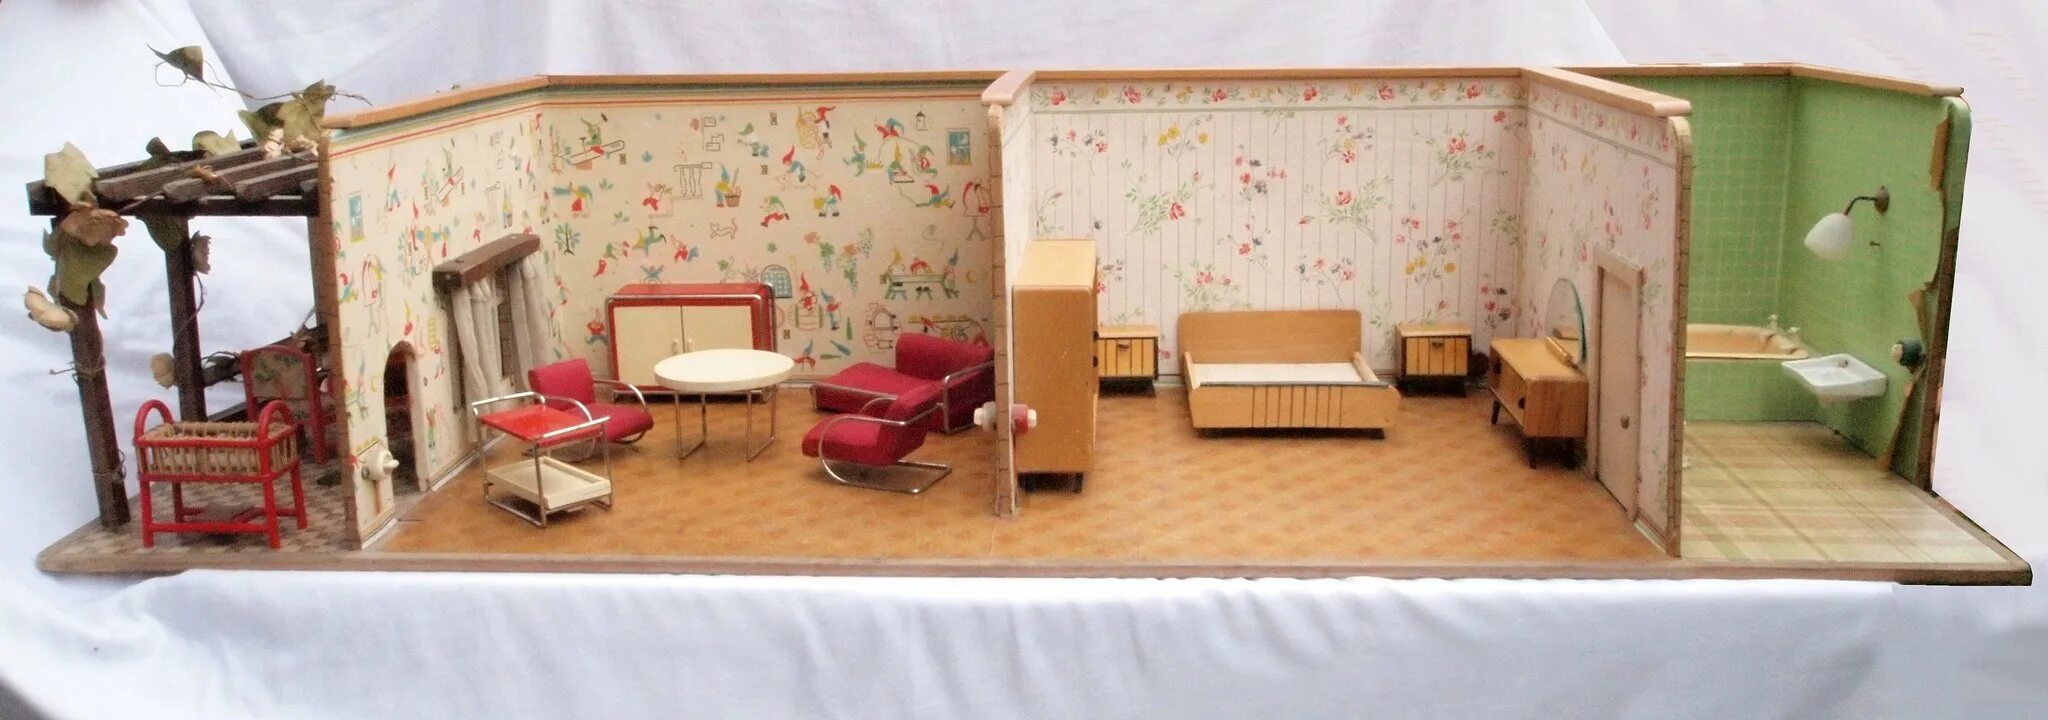 Комната из пластилина. Кукольные домики ГДР. Кукальнаякомната из Картана. Мебель для кукольного домика. Комната из картона.